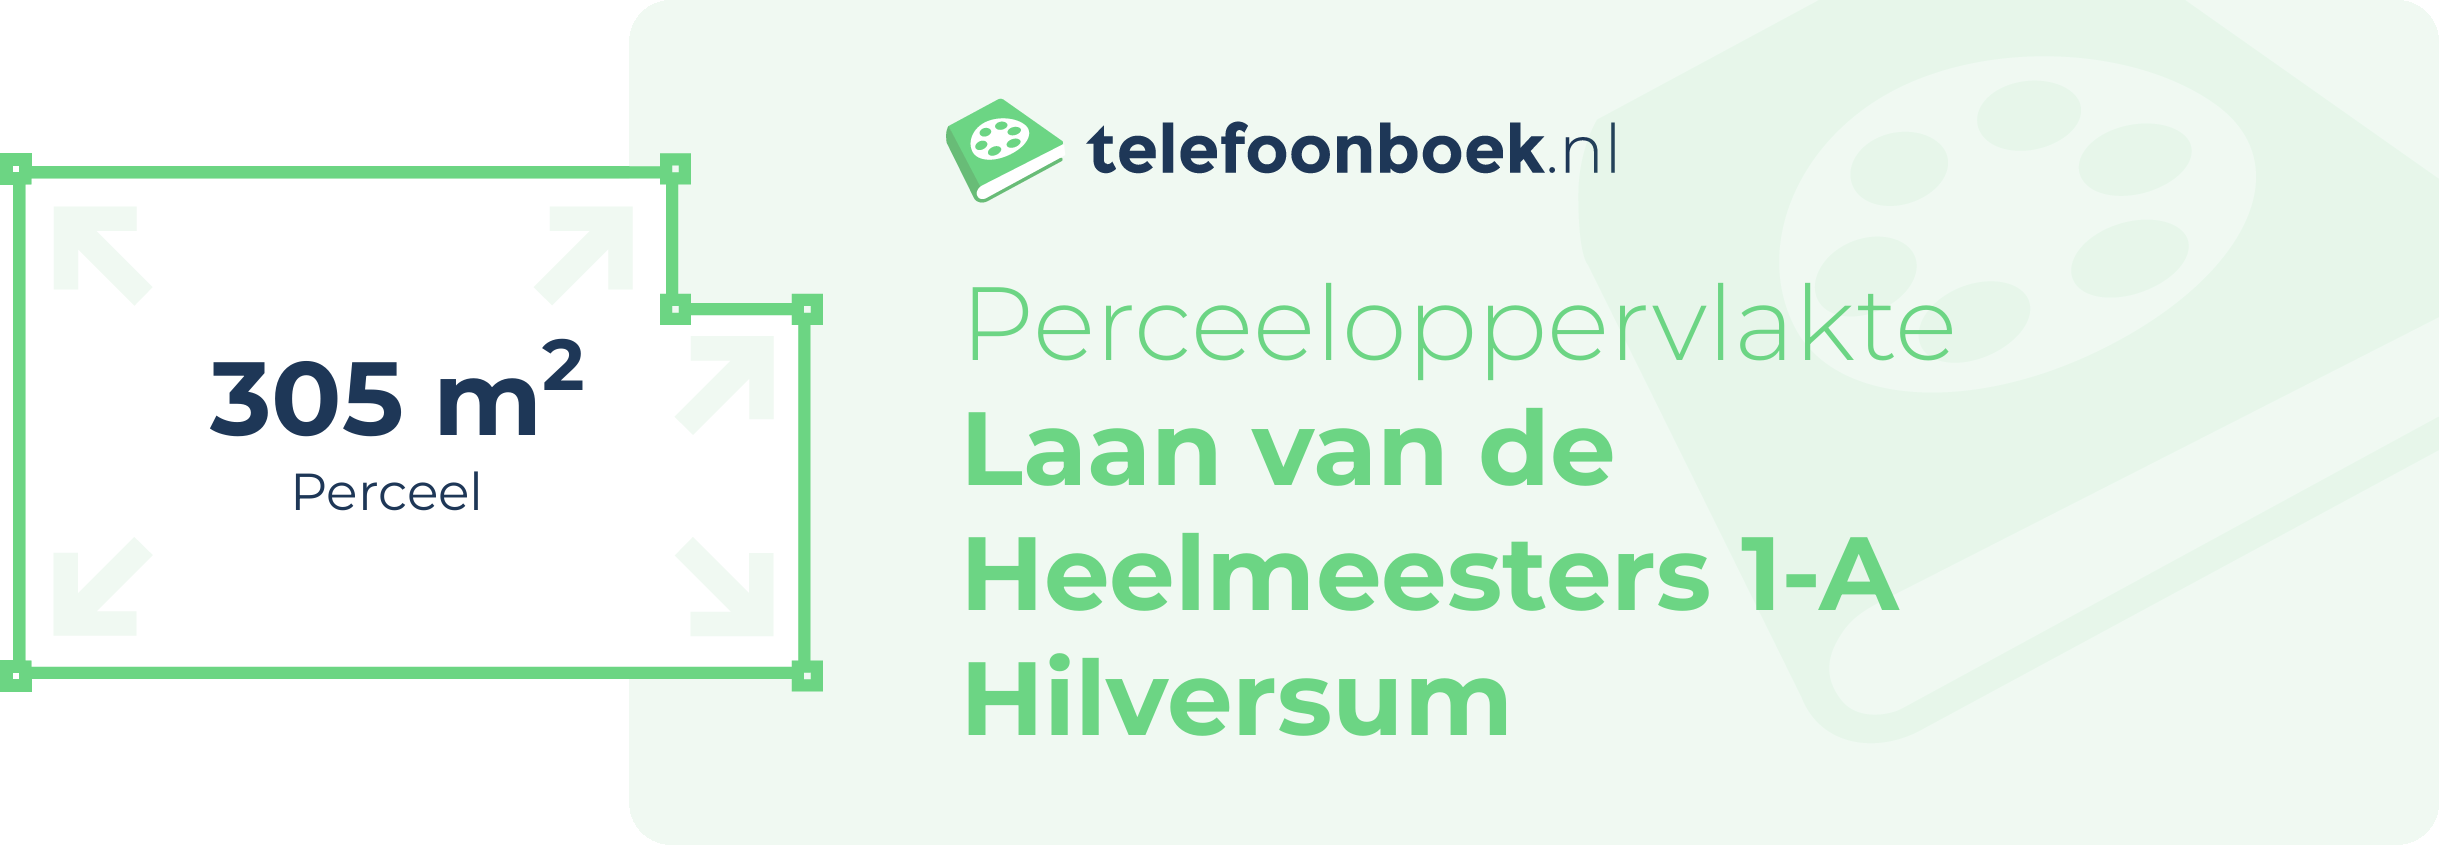 Perceeloppervlakte Laan Van De Heelmeesters 1-A Hilversum